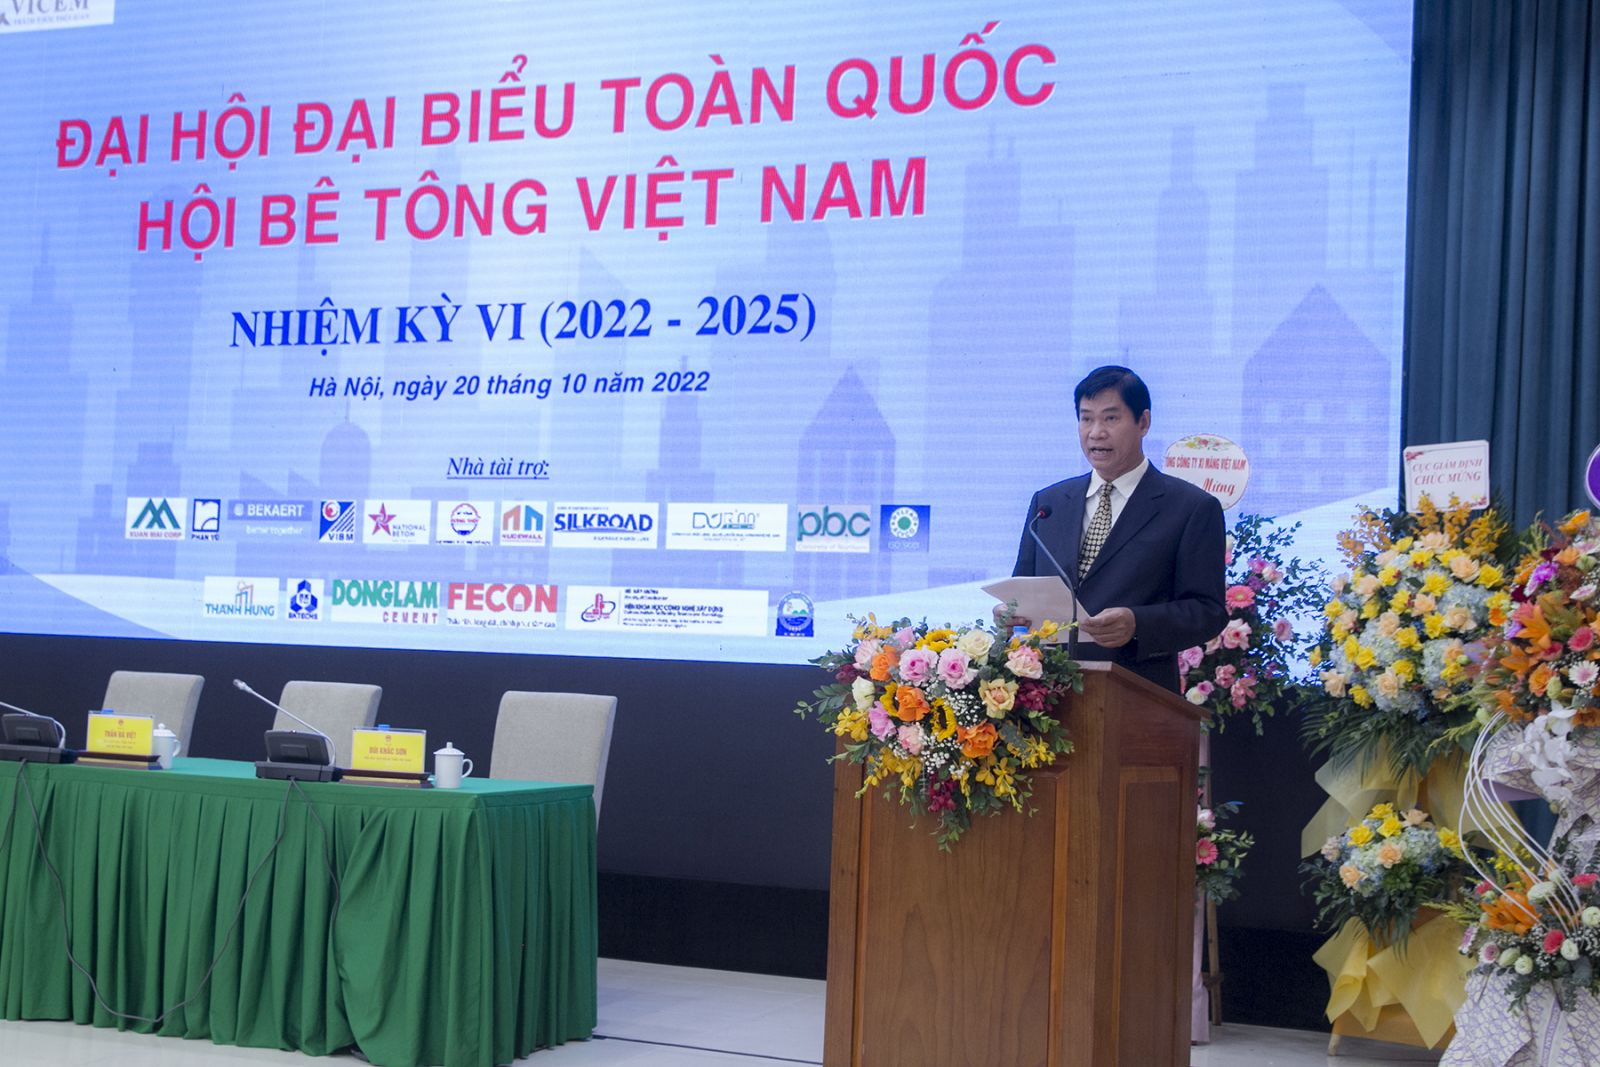 Thứ trưởng Lê Quang Hùng làm Chủ tịch Hội Bê tông Việt Nam nhiệm kỳ 2022-2025